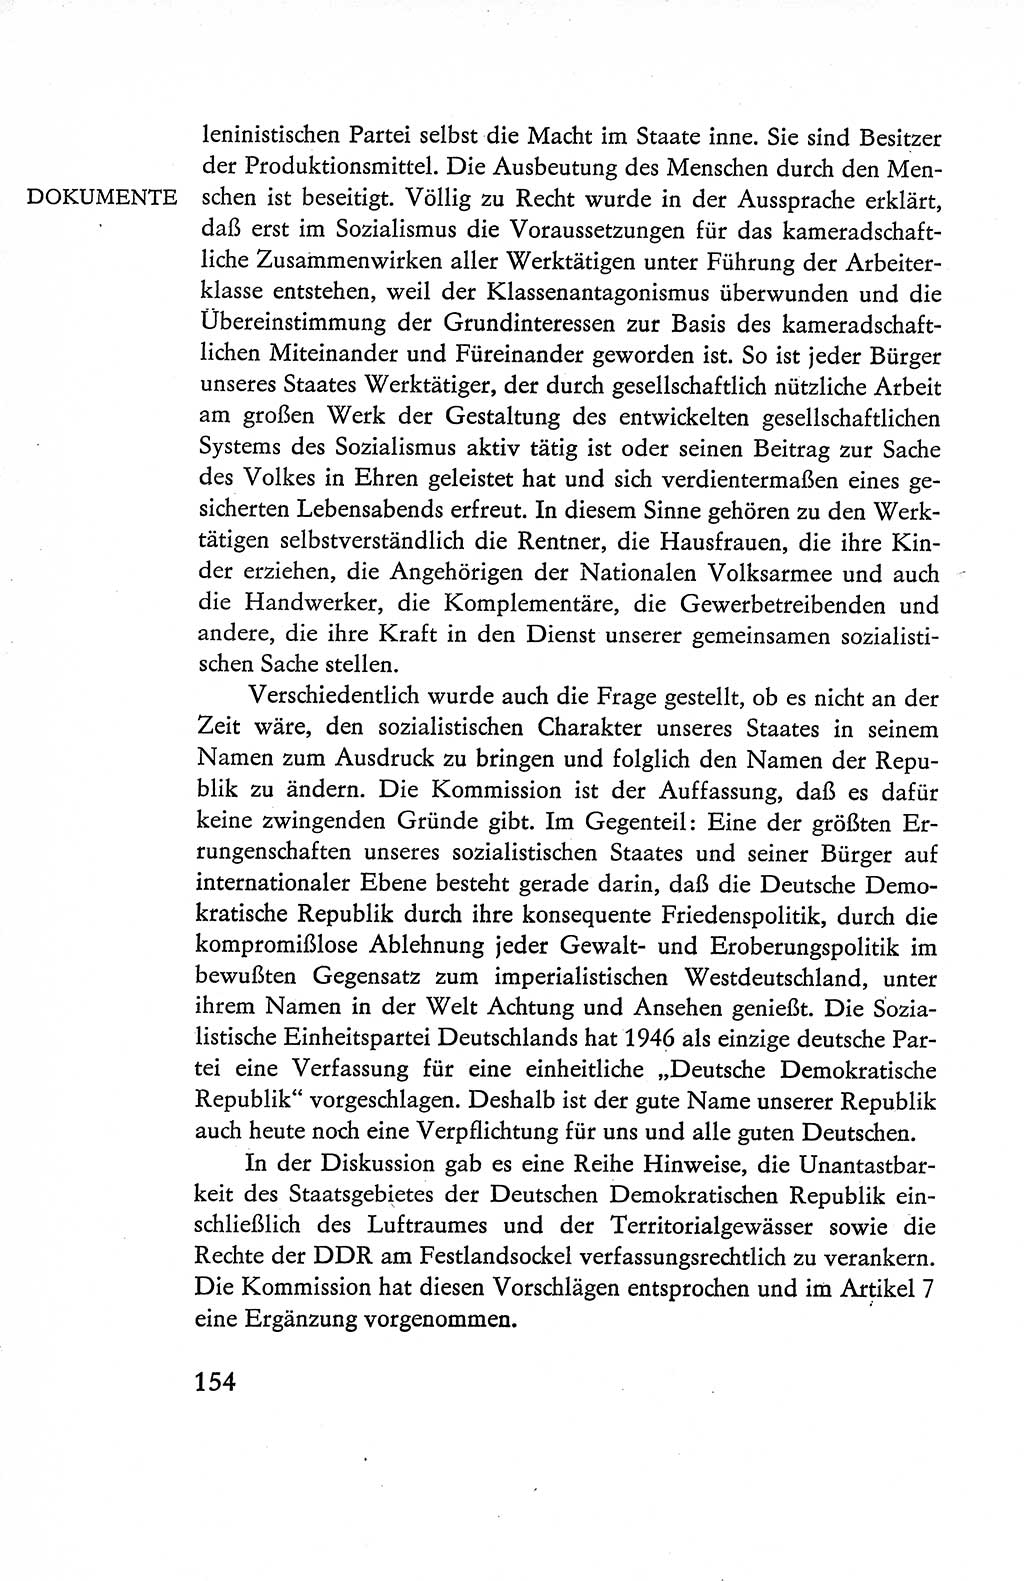 Verfassung der Deutschen Demokratischen Republik (DDR), Dokumente, Kommentar 1969, Band 1, Seite 154 (Verf. DDR Dok. Komm. 1969, Bd. 1, S. 154)